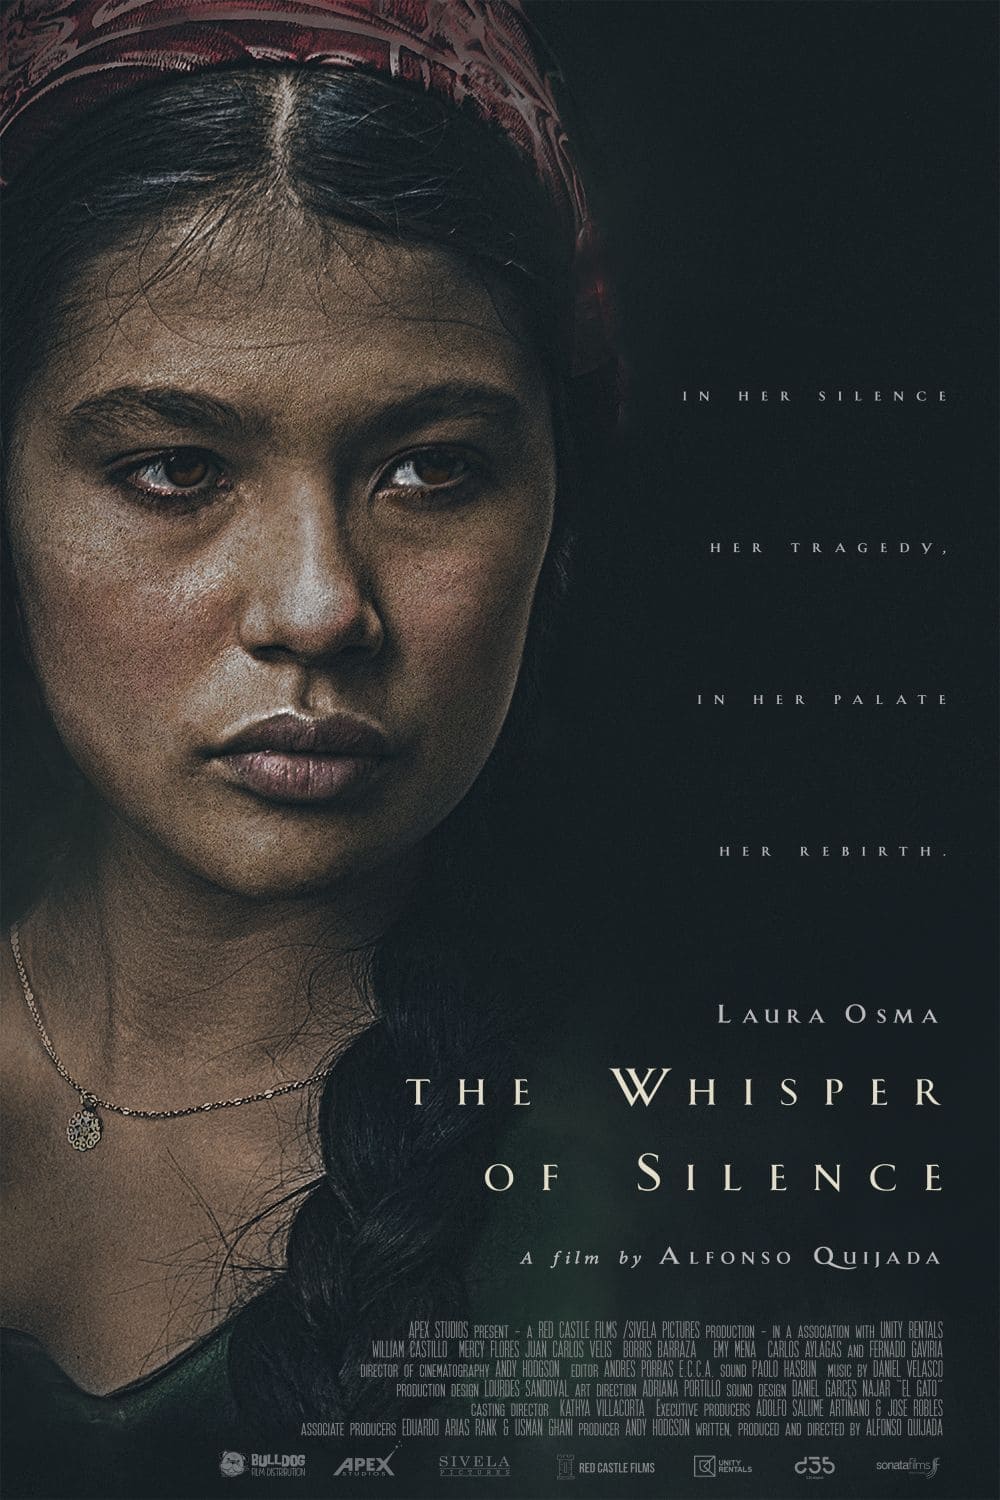 The Whisper of Silence